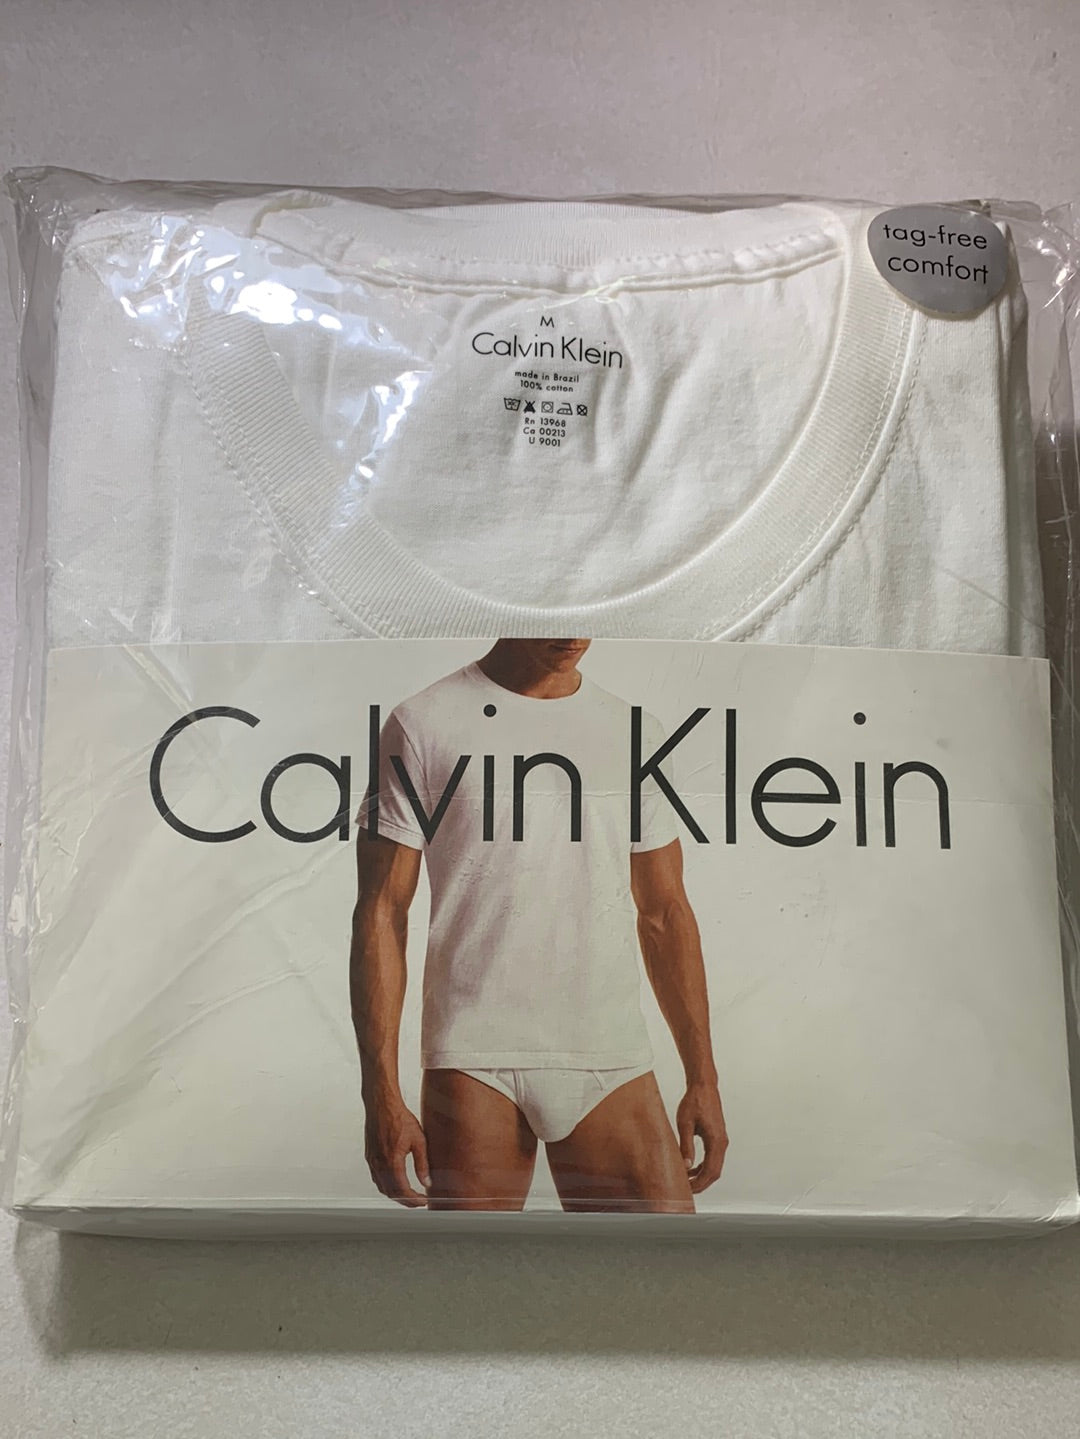 NIP - Calvin Klein white 3 pack Crew Neck T-Shirt / Undershirt - Medium